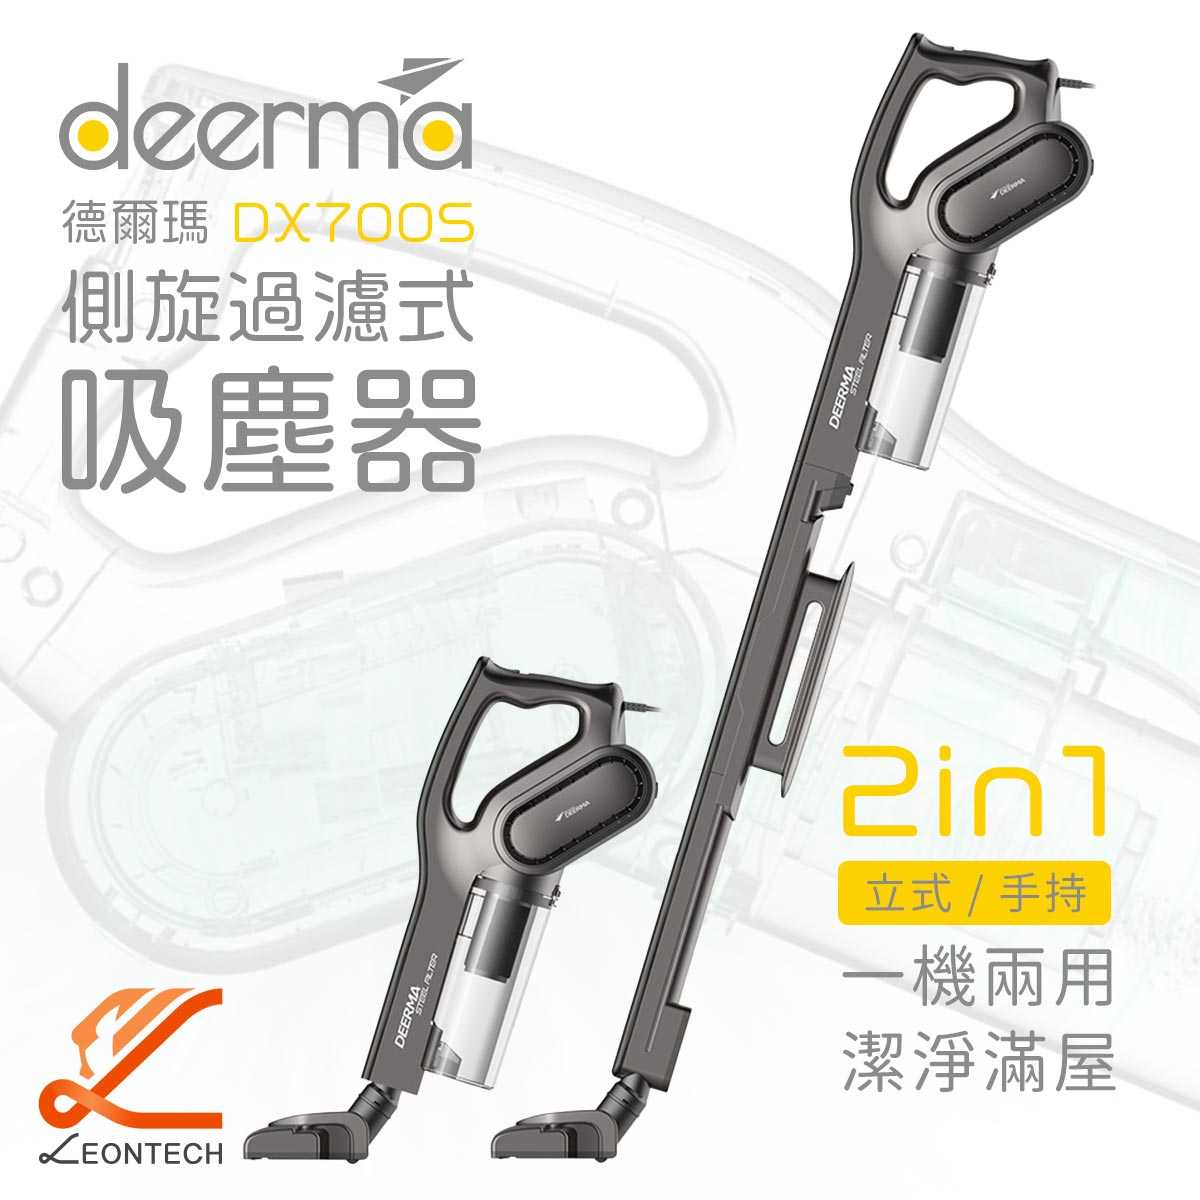 小米有品 德爾瑪DX700S家用吸塵器 手持除螨機 手持吸塵器 升級款